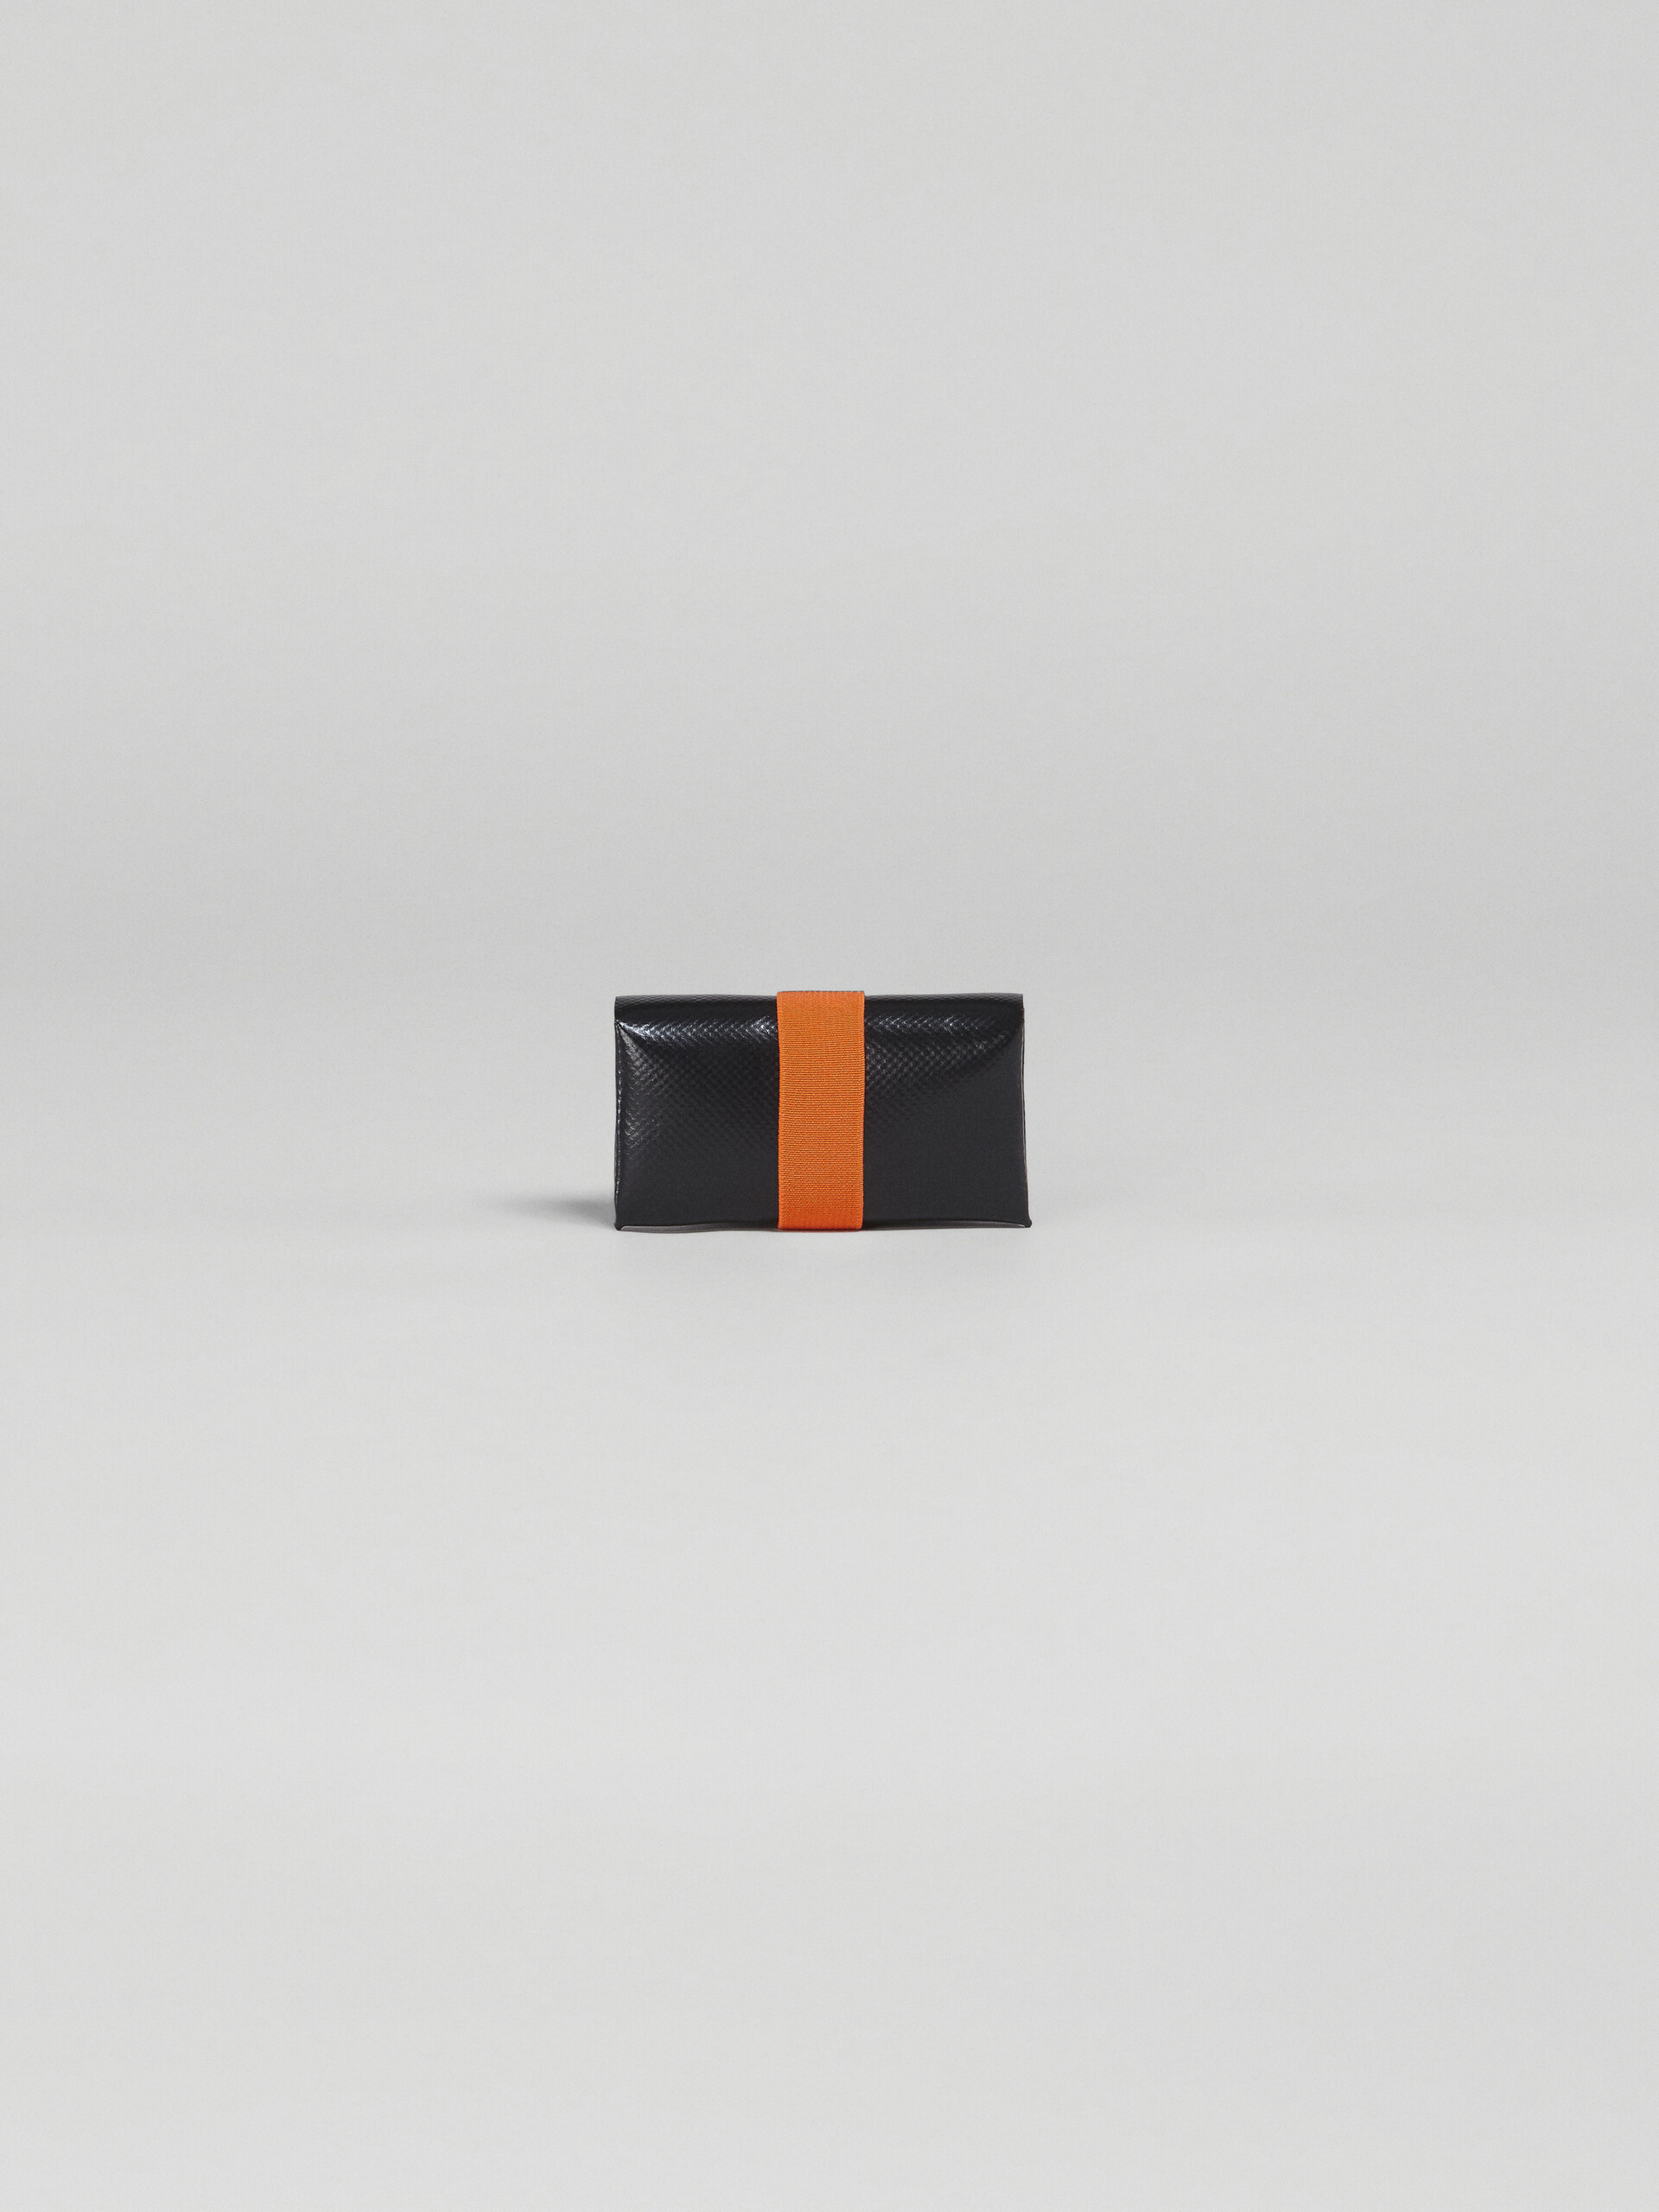 Portafoglio origami nero e arancio - Portafogli - Image 3